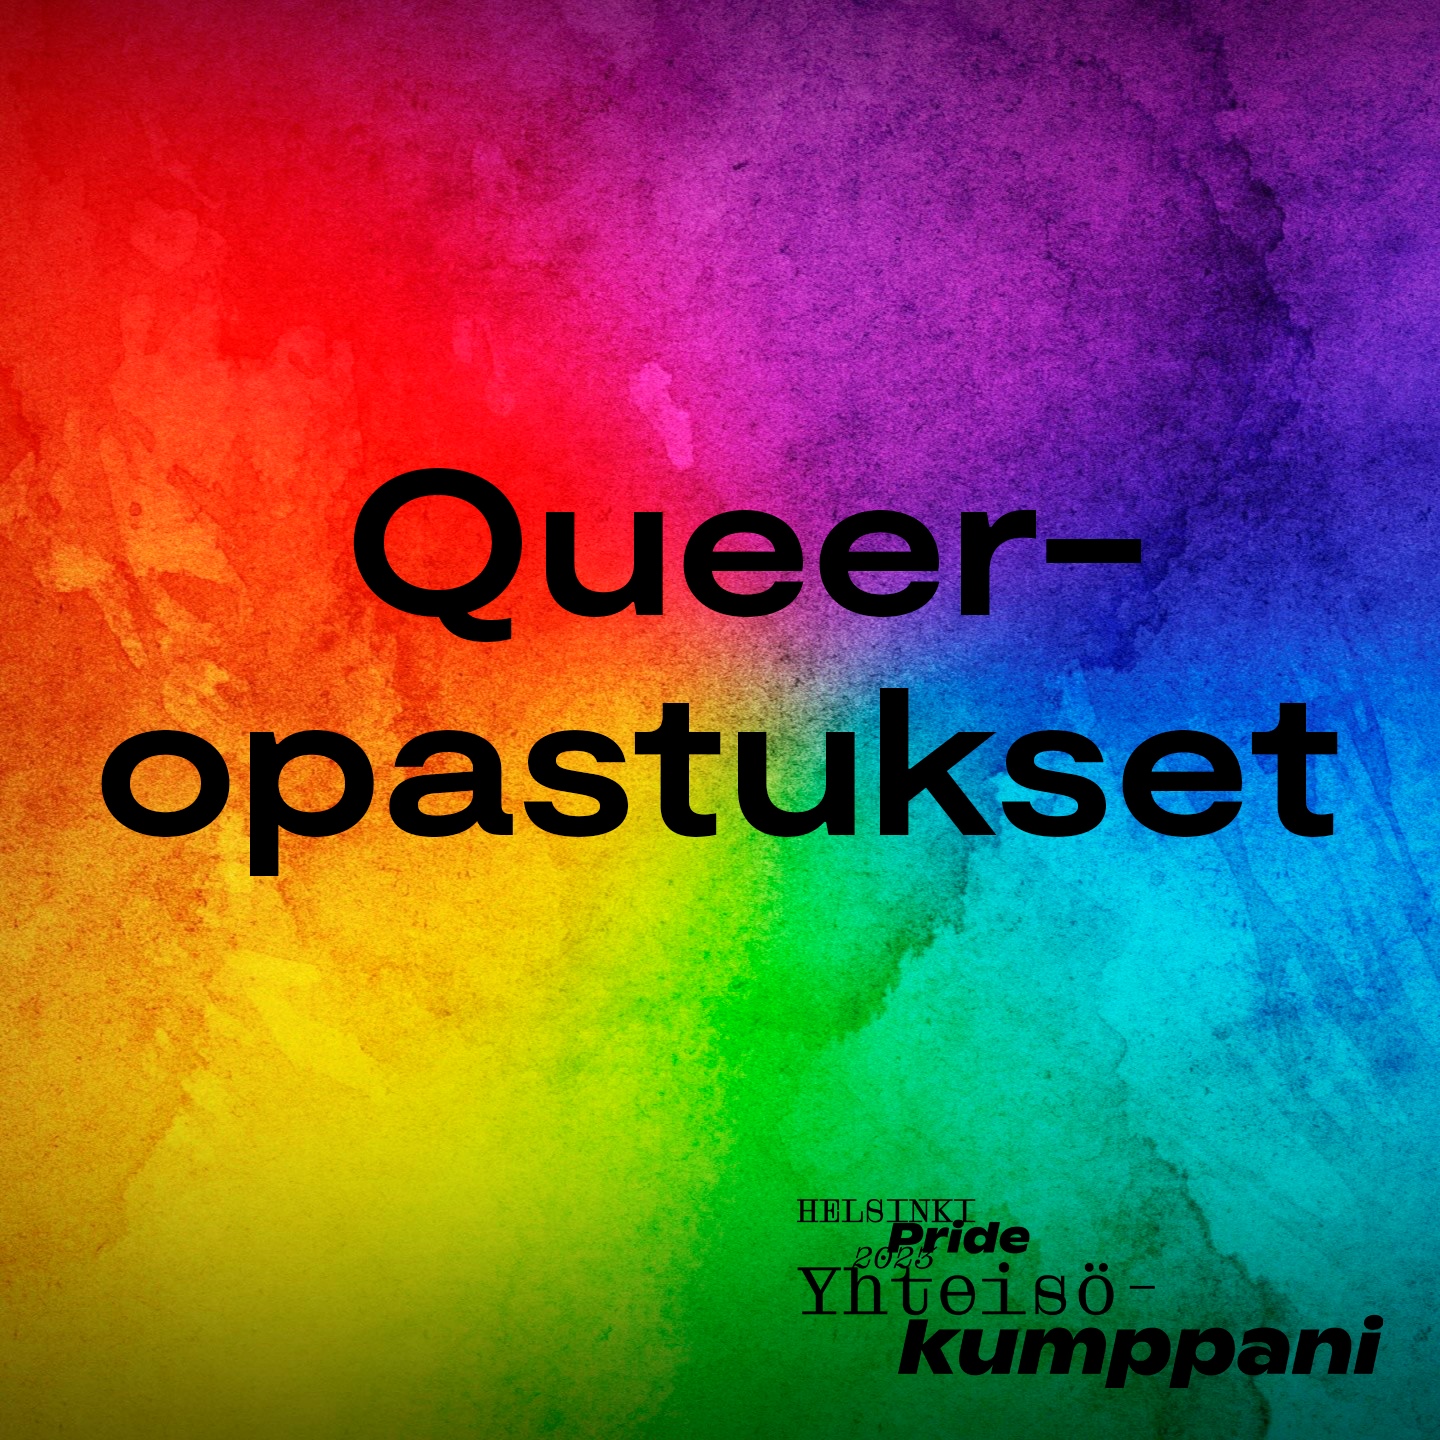 Ilmaisia Queer-opastuksia ennakkoilmoittautuneille!